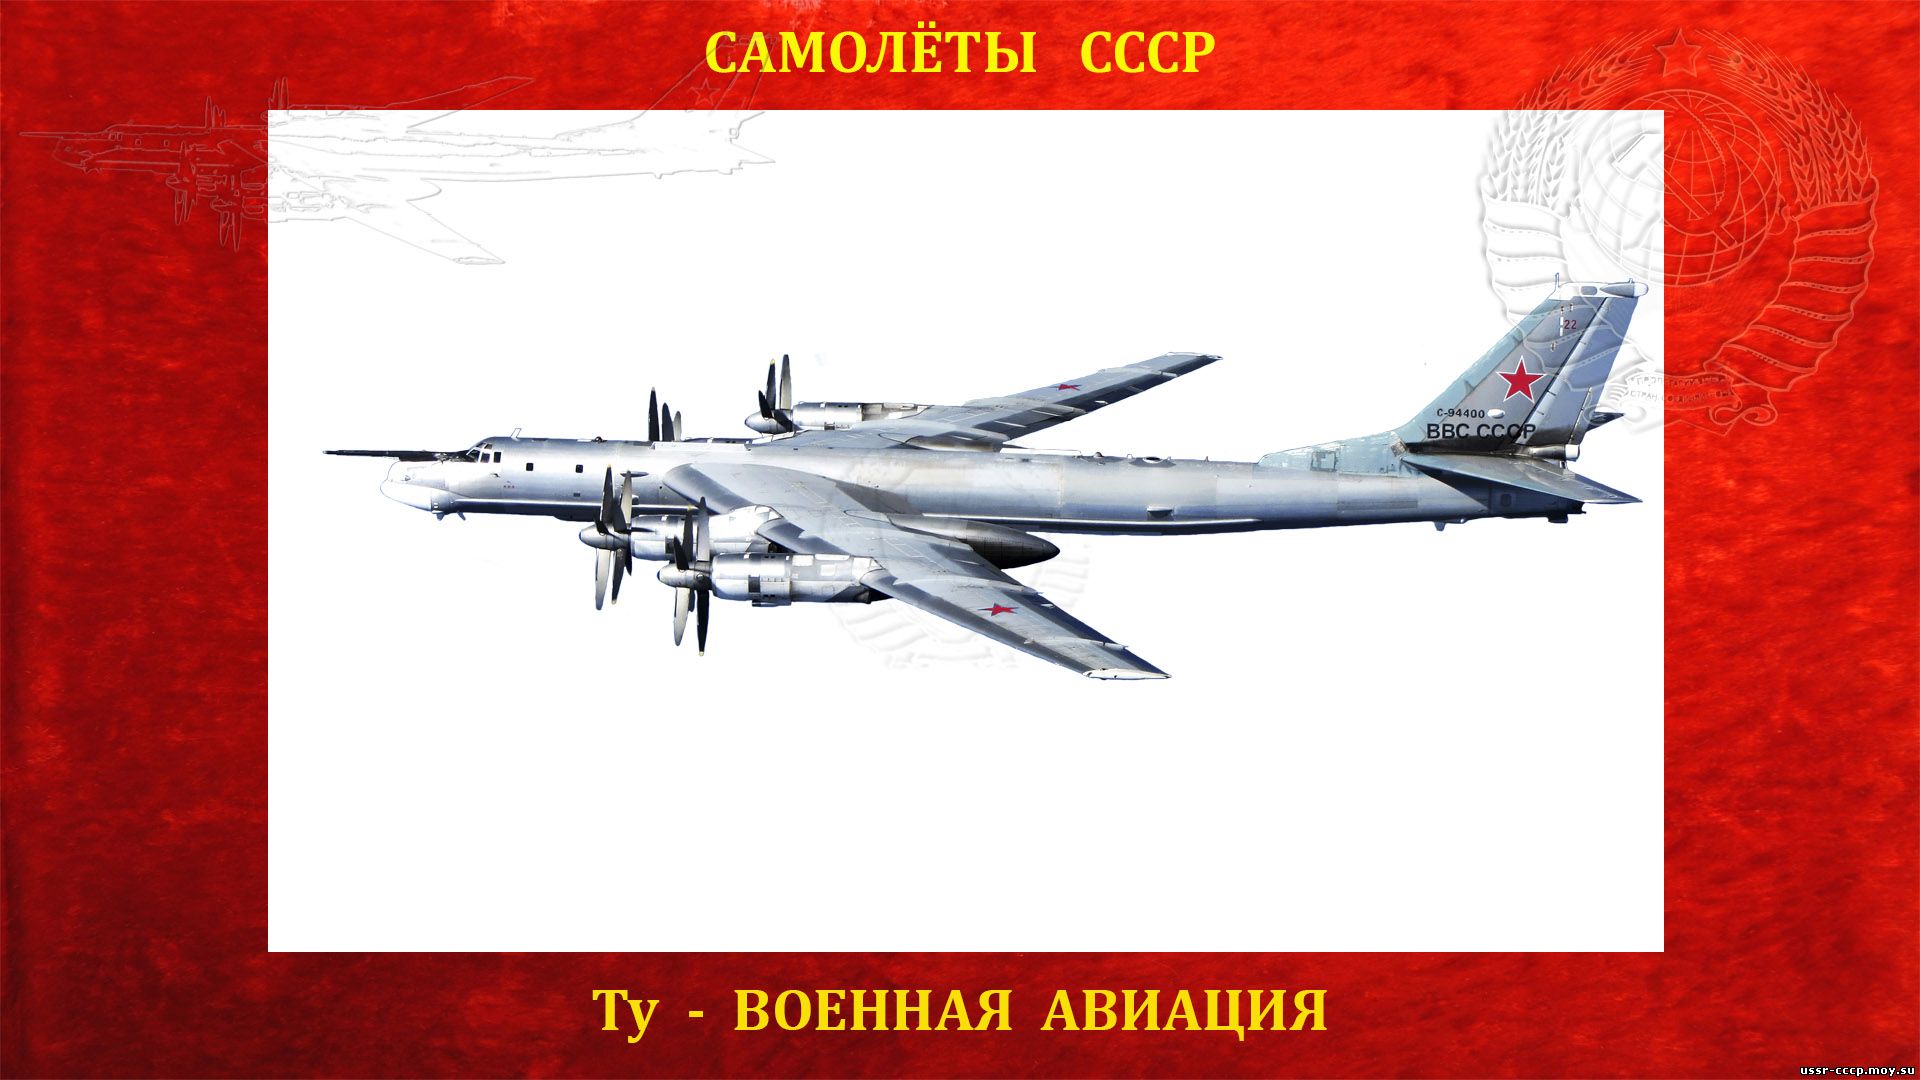 Ту-95 — По кодификации НАТО: Bear — «Медведь») — Советский турбовинтовой стратегический бомбардировщик-ракетоносец СССР